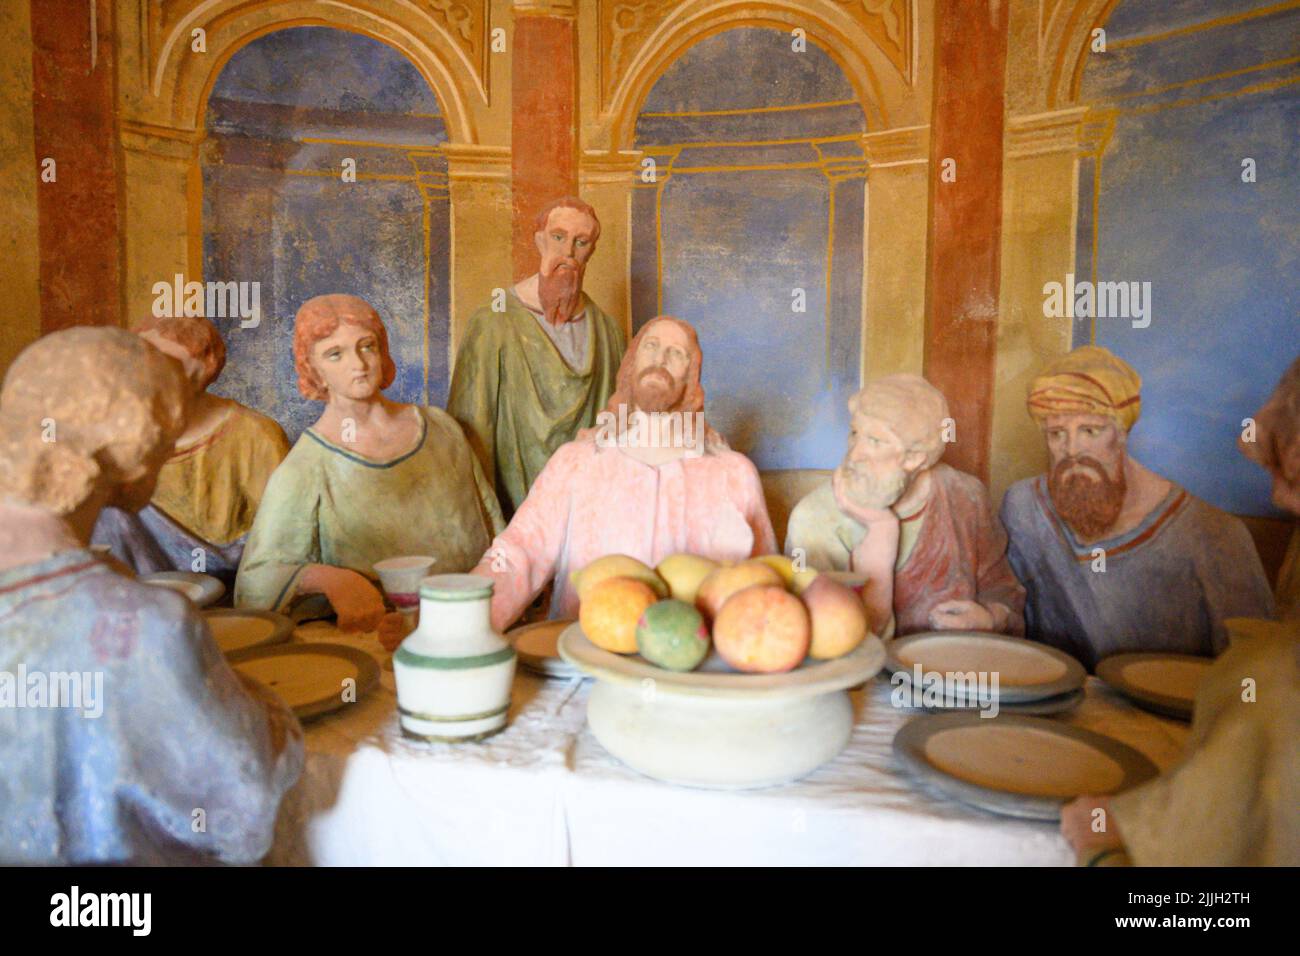 Mai 2022, Mongardino, Italie statues en bois représentant le dernier souper de jésus datant de 1700 Banque D'Images